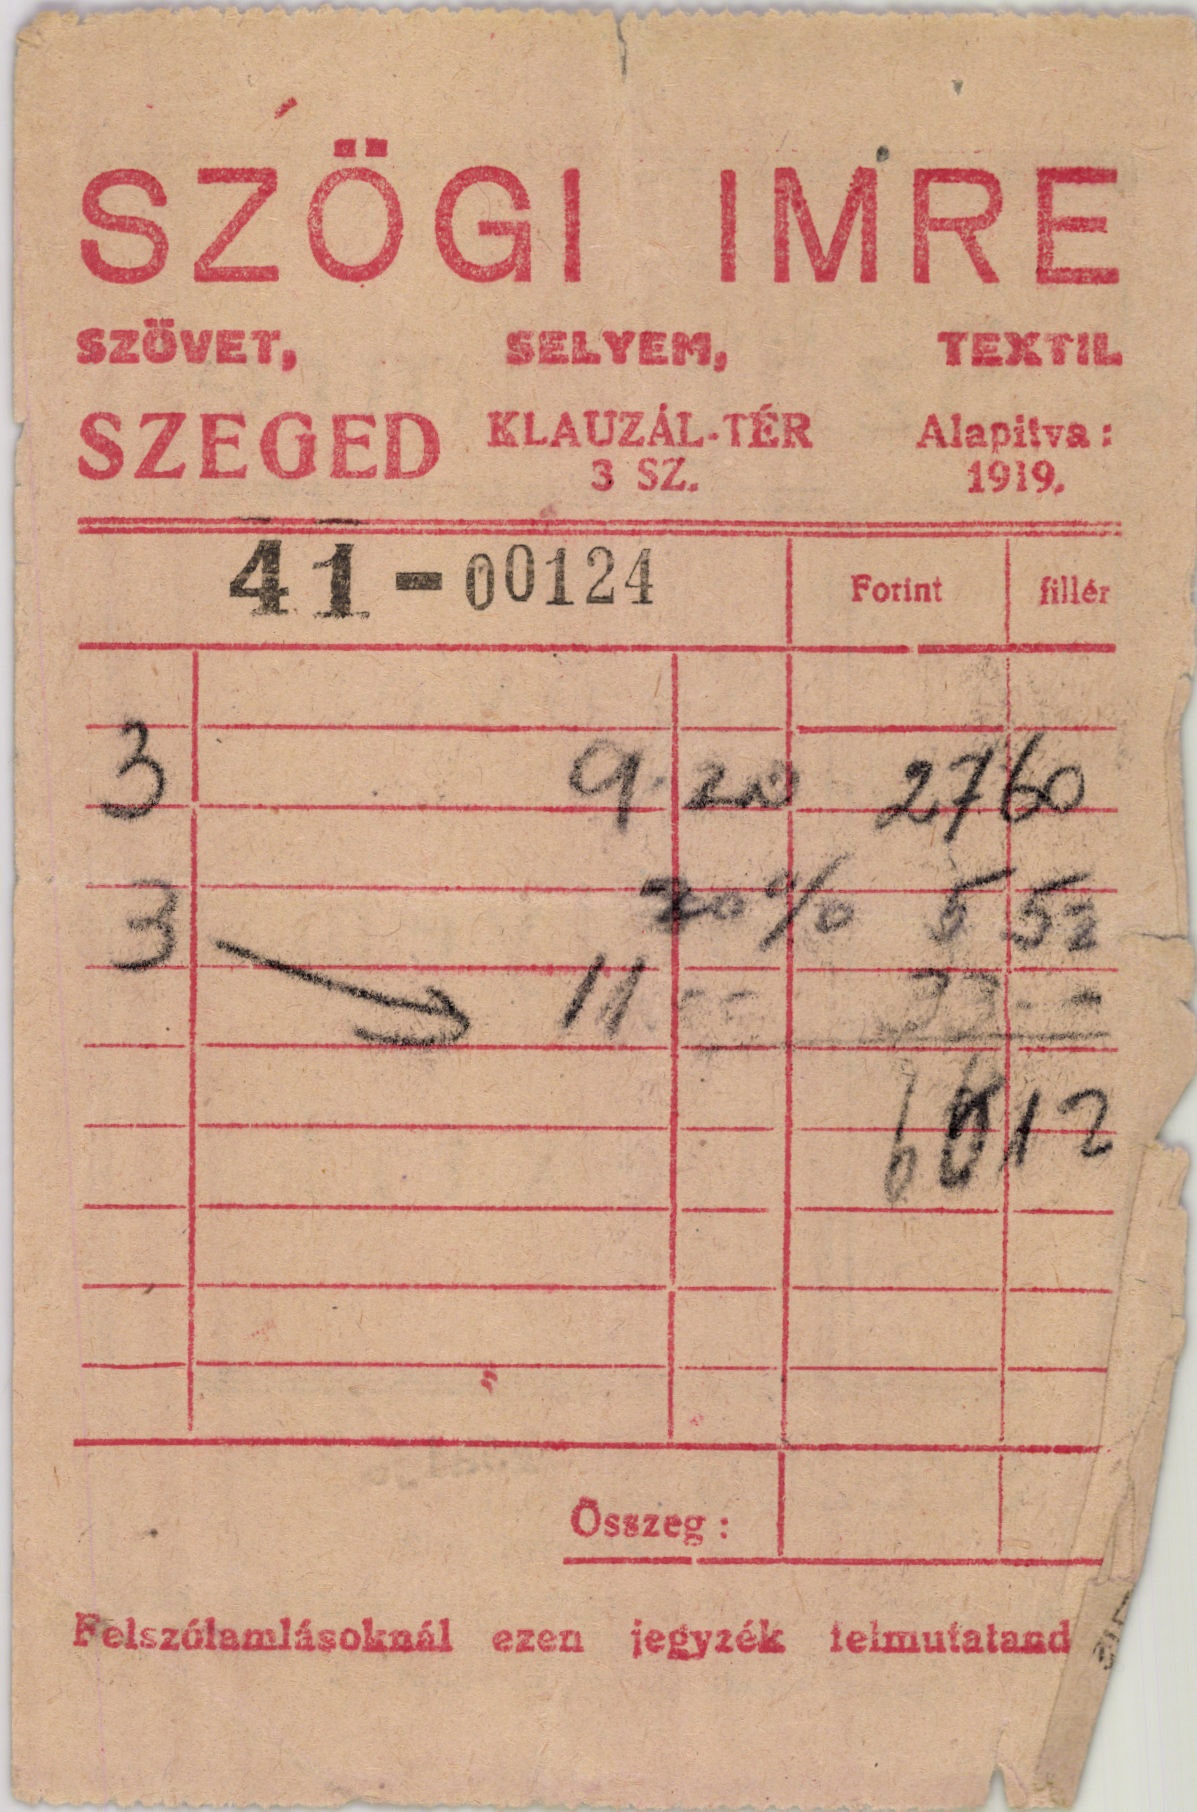 Szögi Imre szövet, selyem, textil (Magyar Kereskedelmi és Vendéglátóipari Múzeum CC BY-NC-SA)